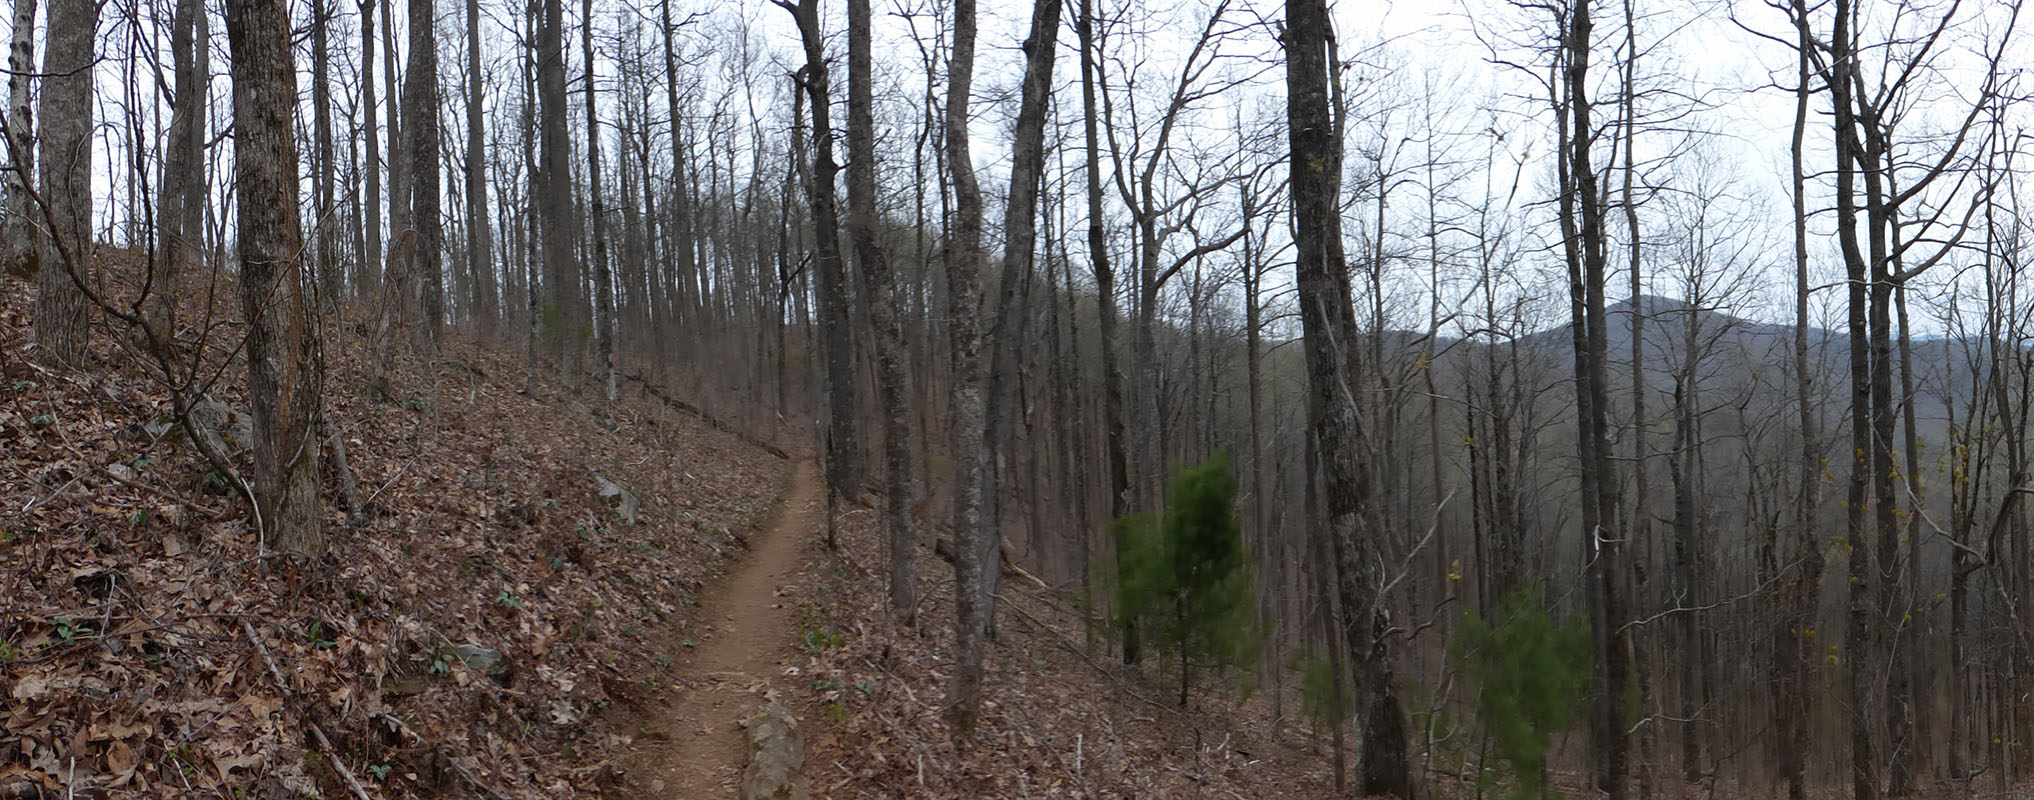 Approach Trail, Georgia